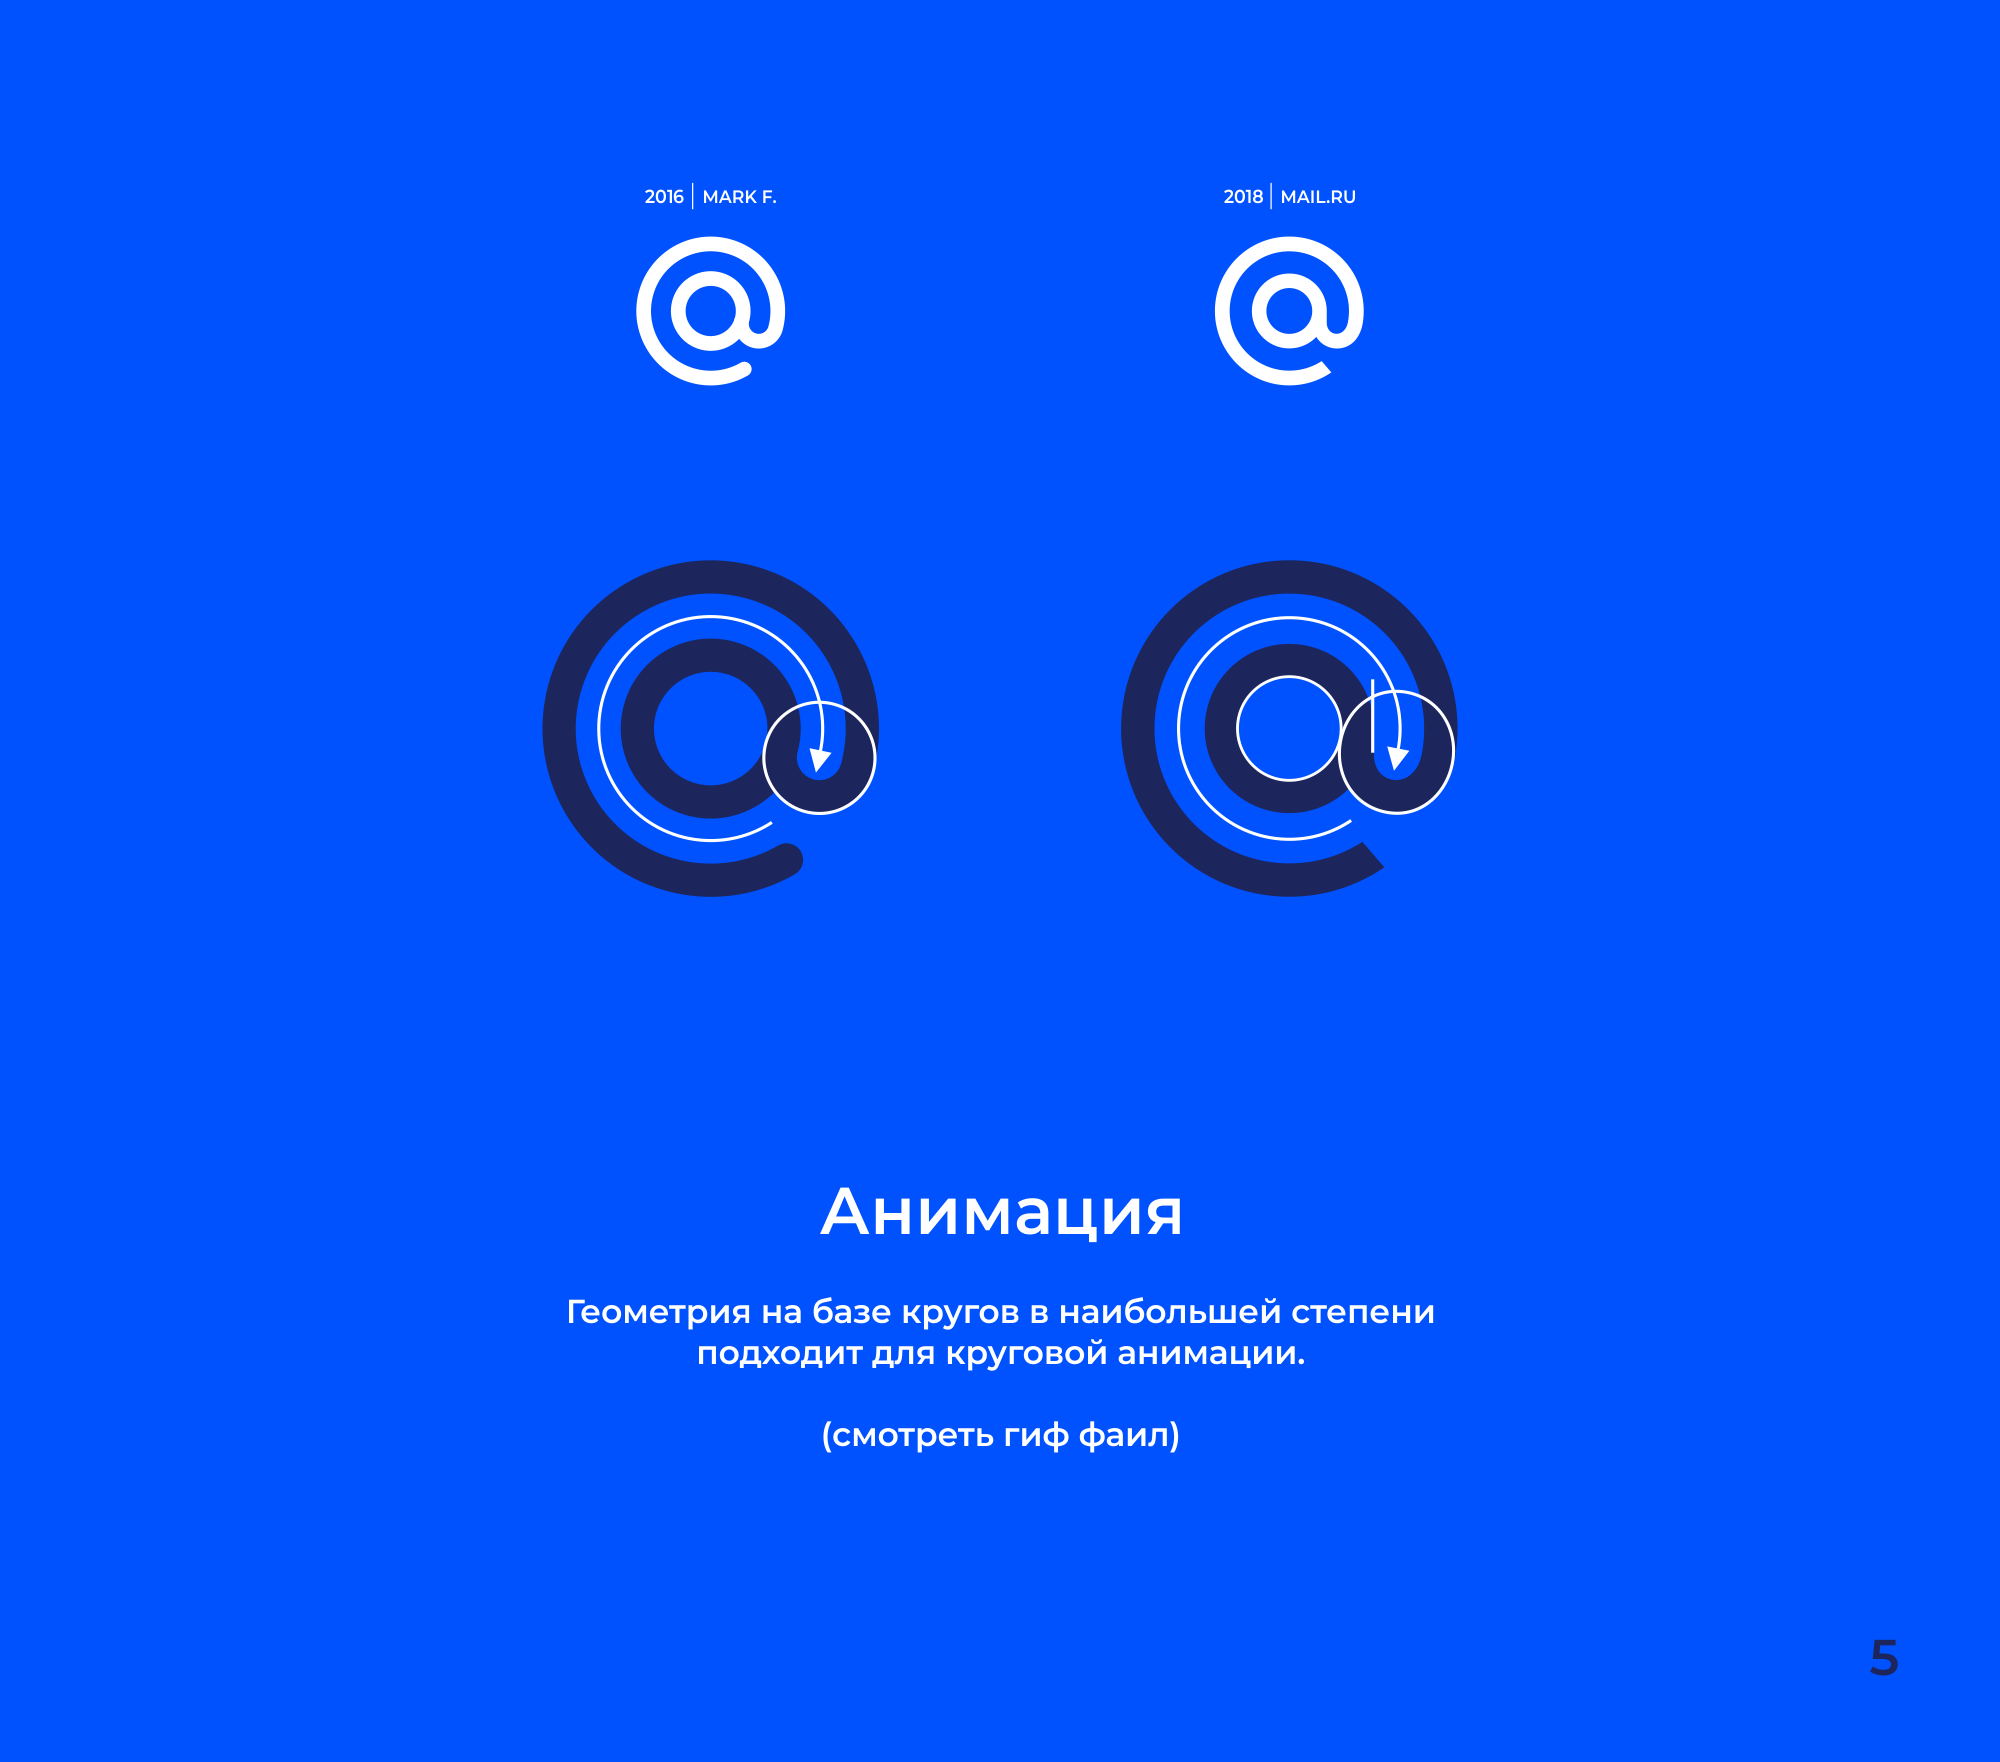 Mail.ru Logo - mail.ru case – Professional Logo Design